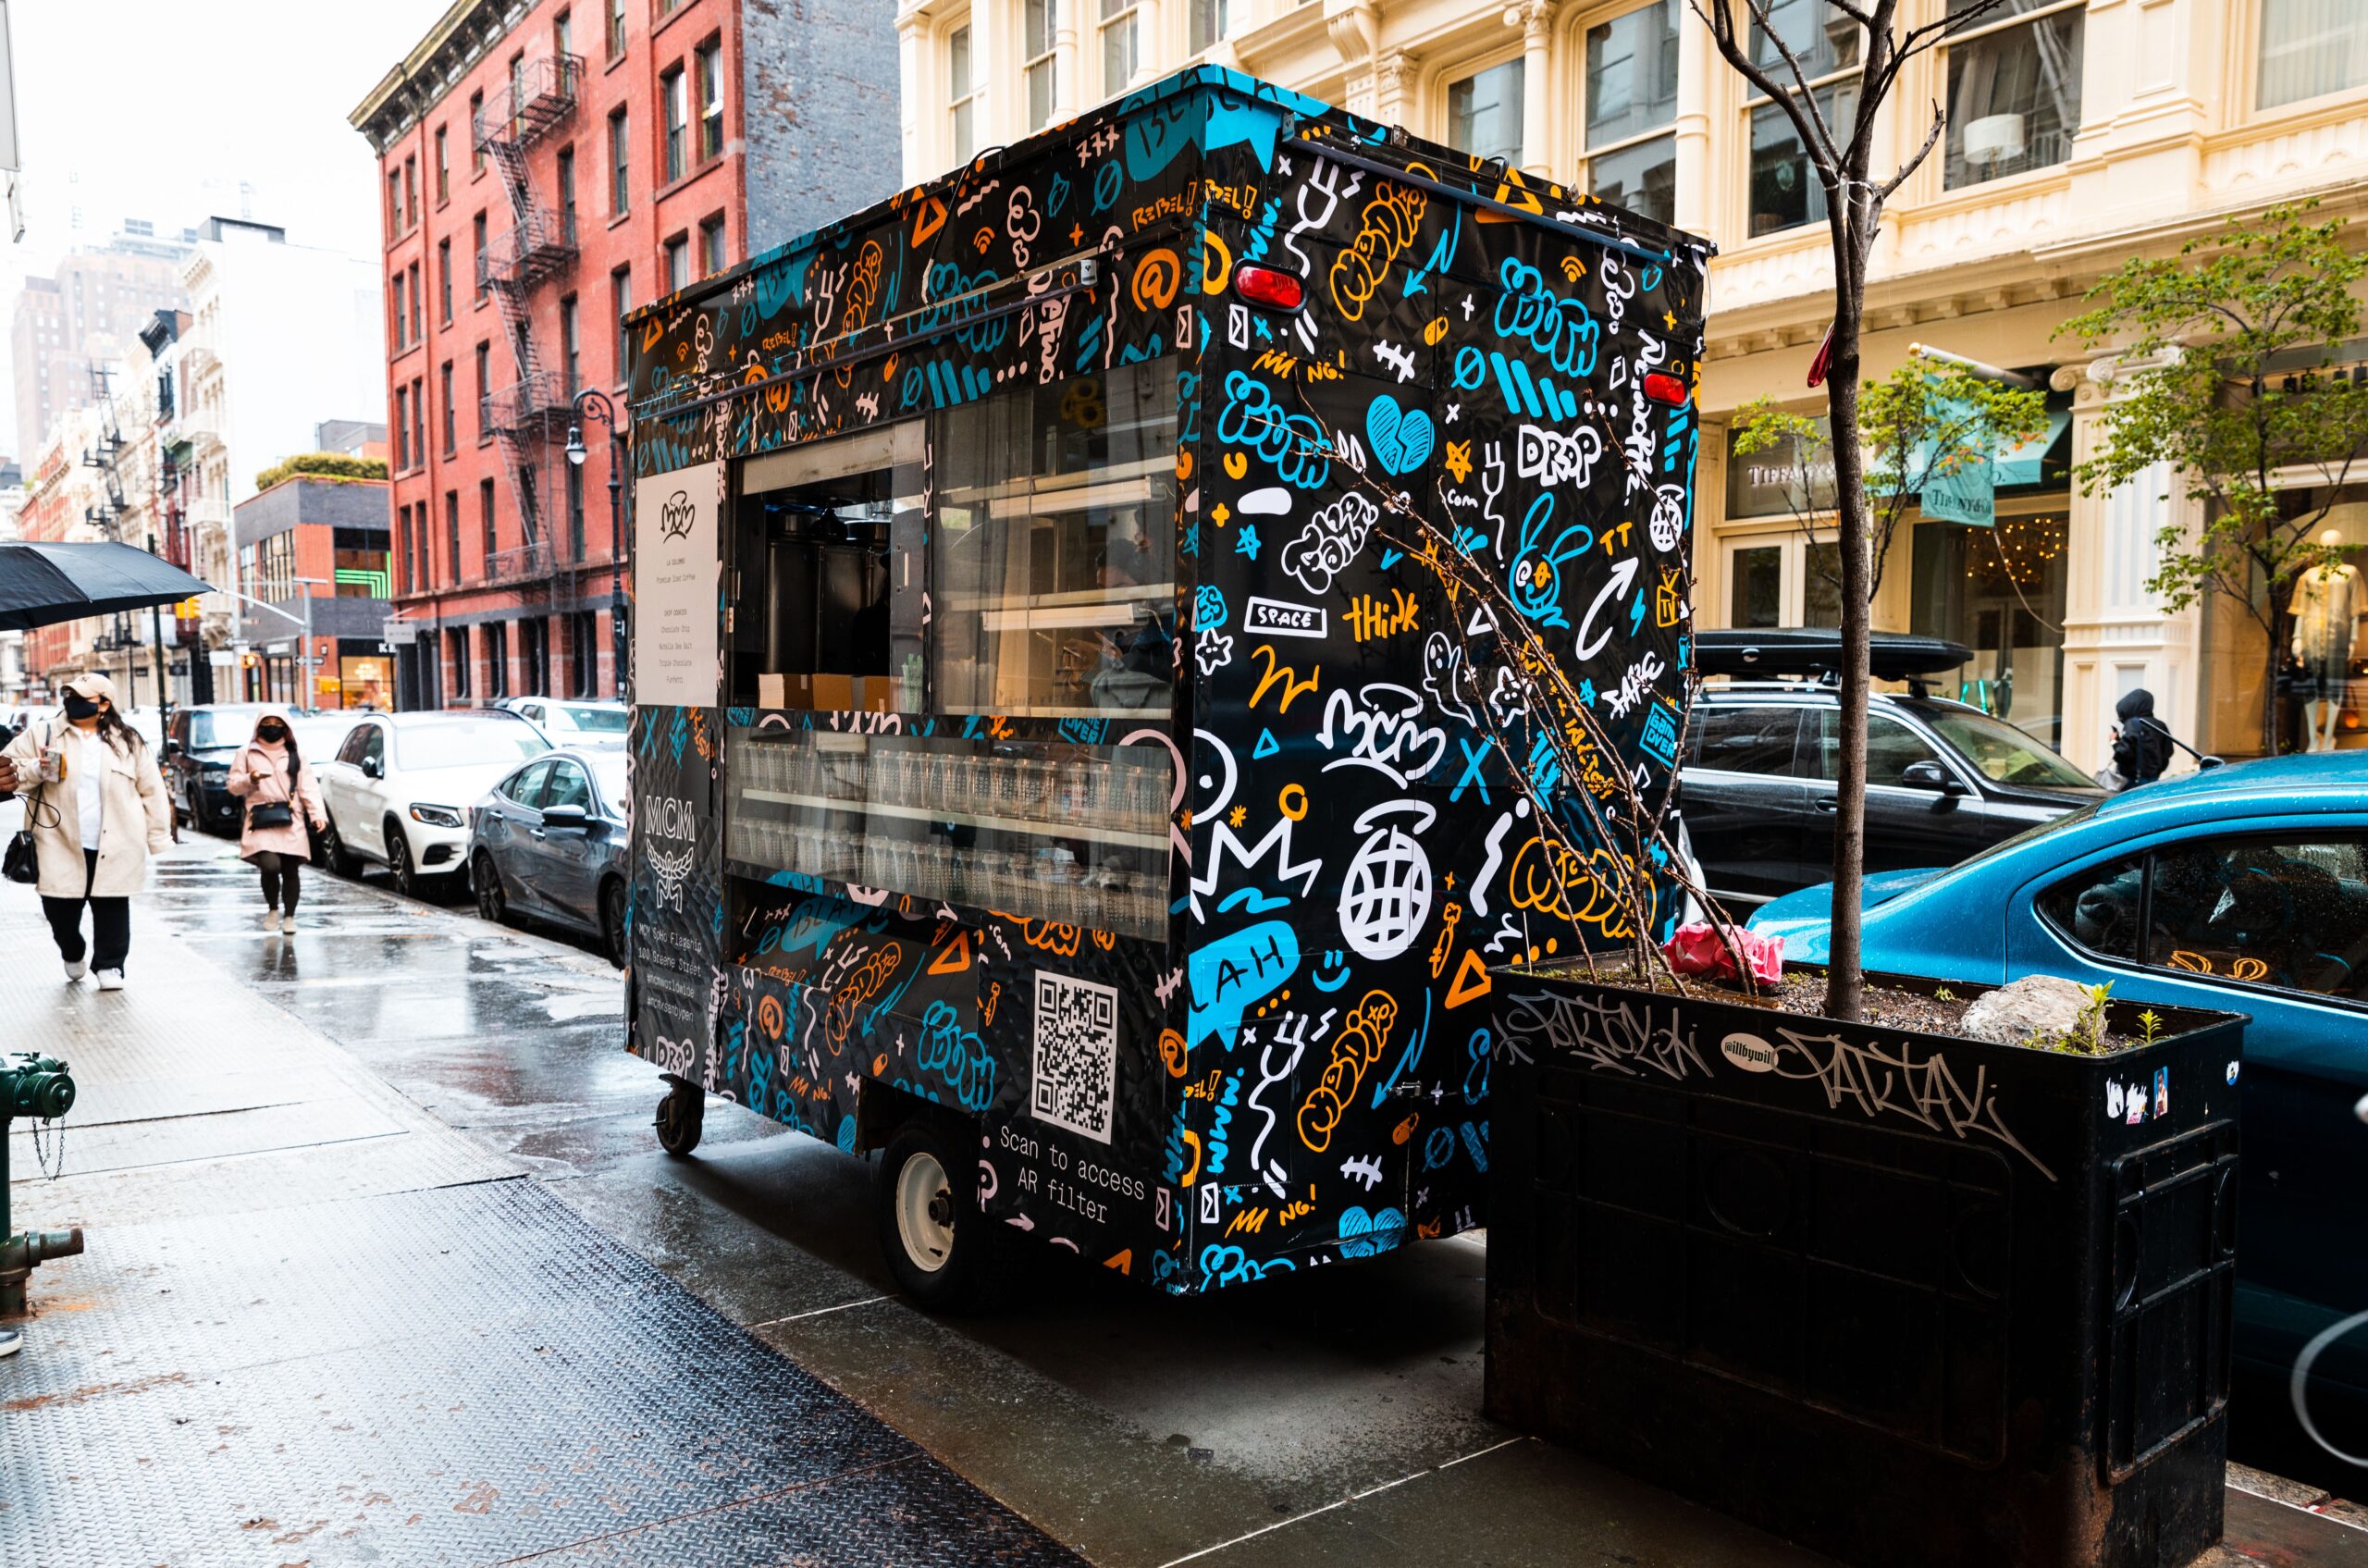 MCM Branded Food Cart NYC